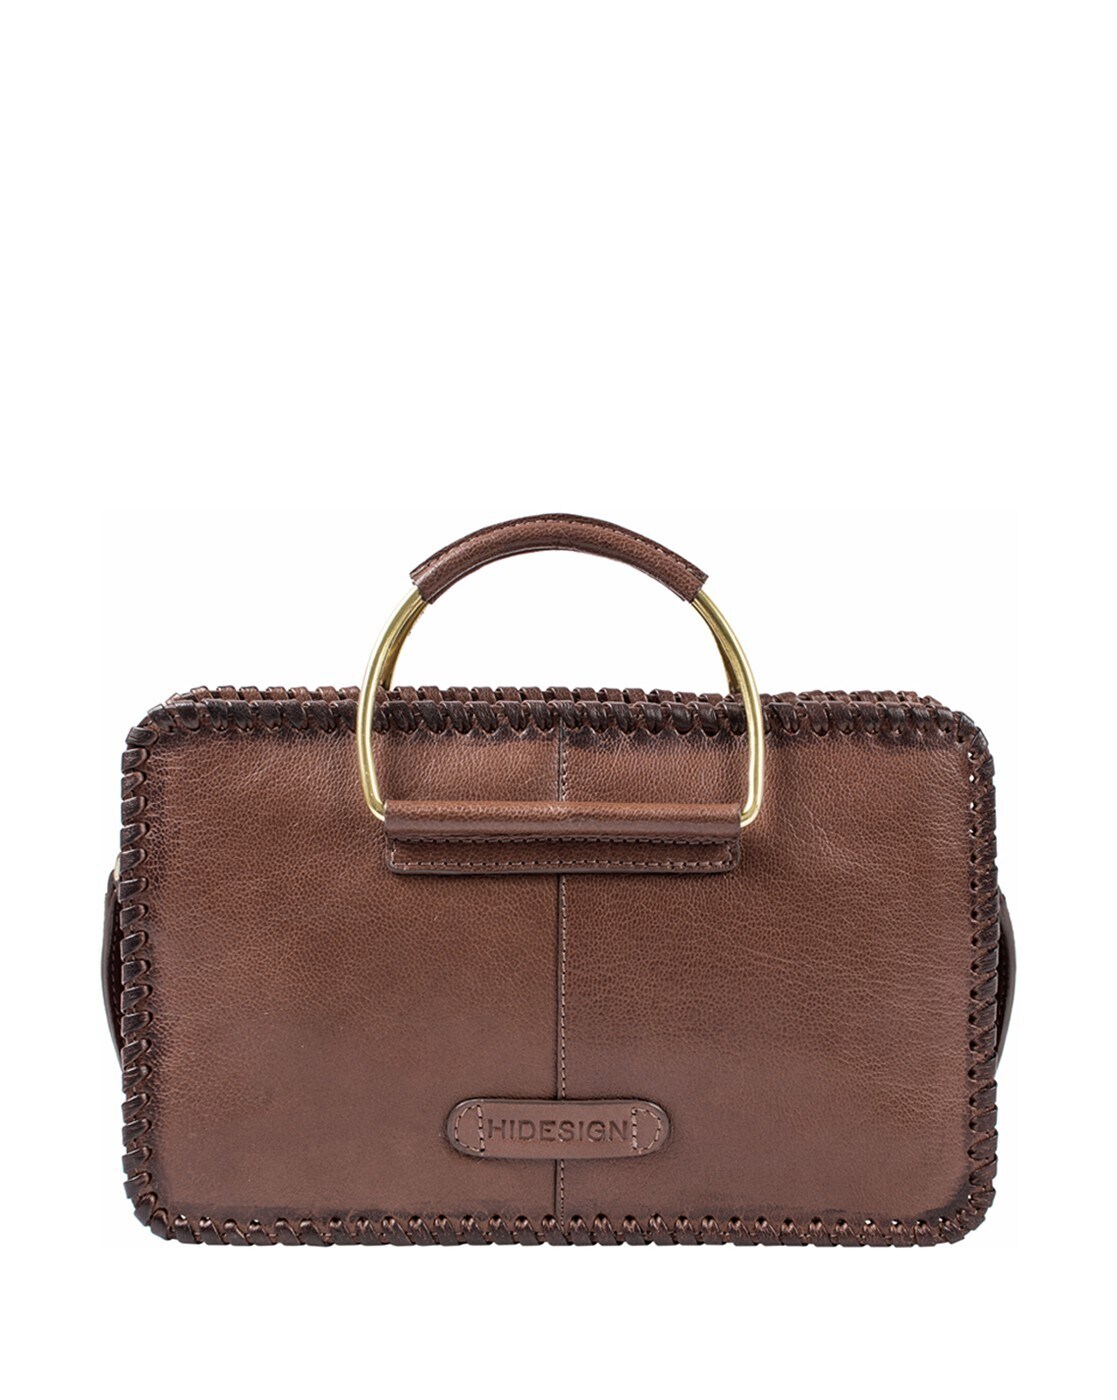 Buy Hidesign Women Brown Genuine Leather Sling Bag Online at Best